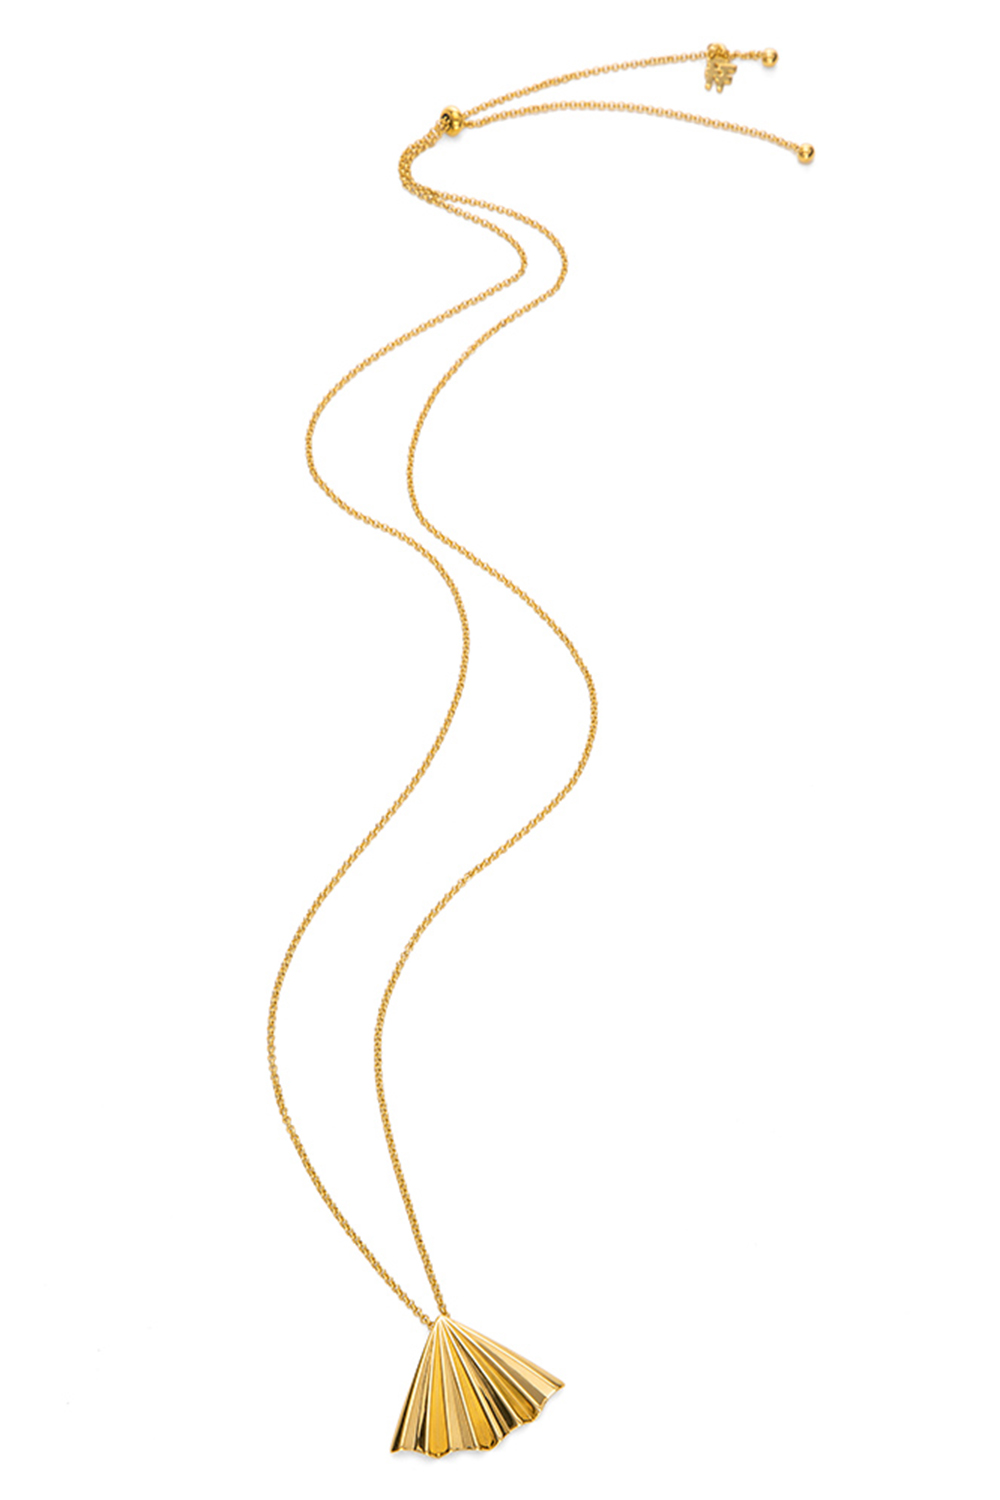 FOLLI FOLLIE – Γυναικείο μακρύ κολιέ από ορείχαλκο FOLLI FOLLIE PLEATS BLISS χρυσό 1N20D008Y